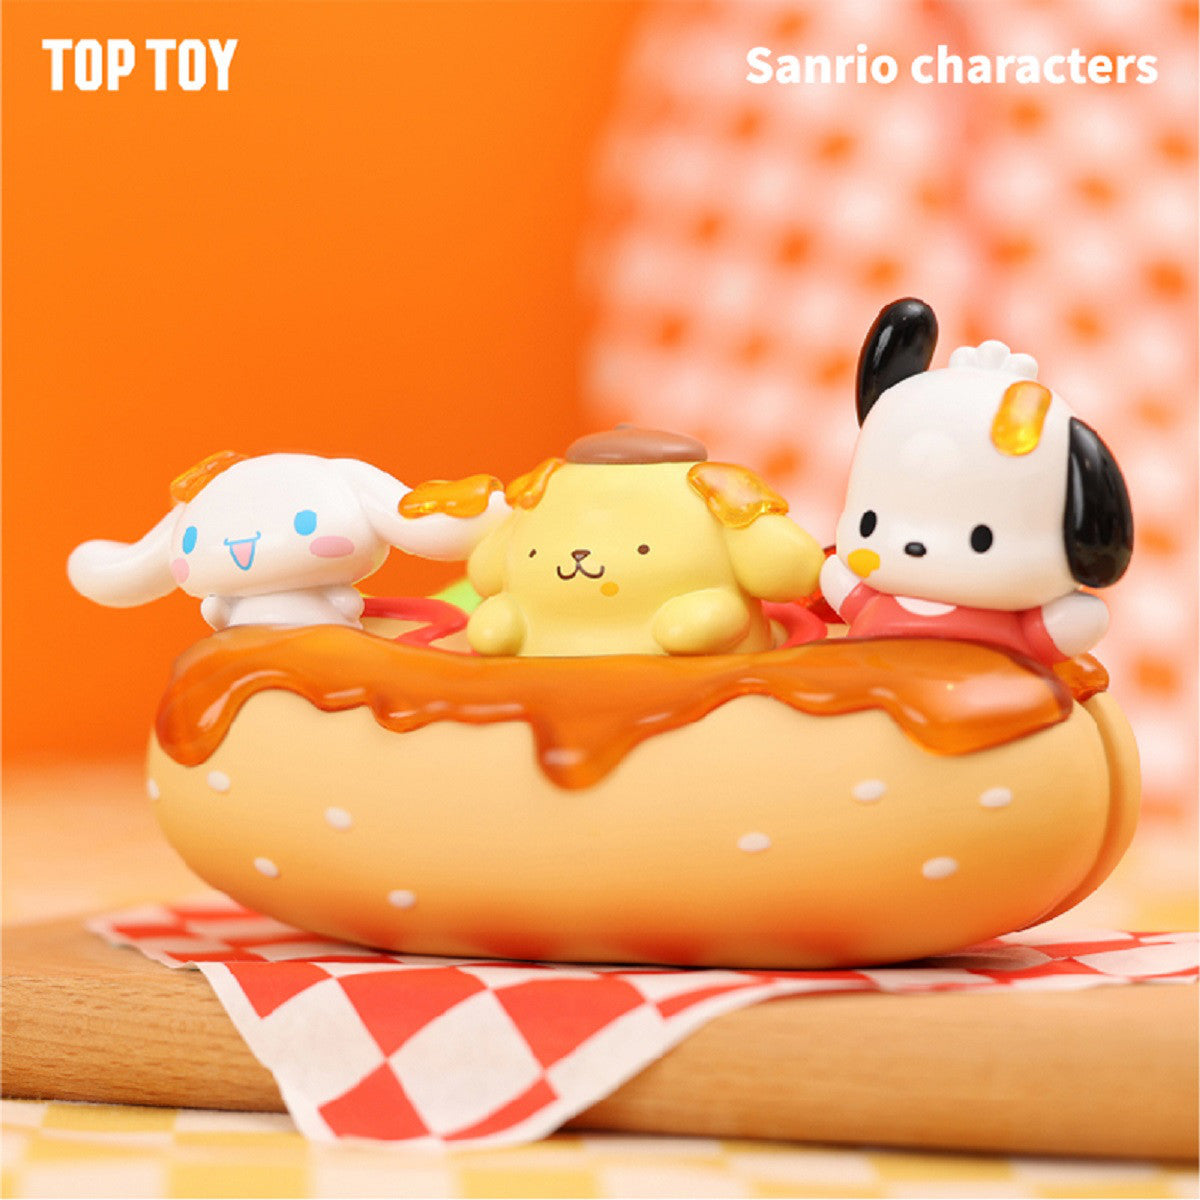 Sanrio Family Delicious Hot Dog - Preorder